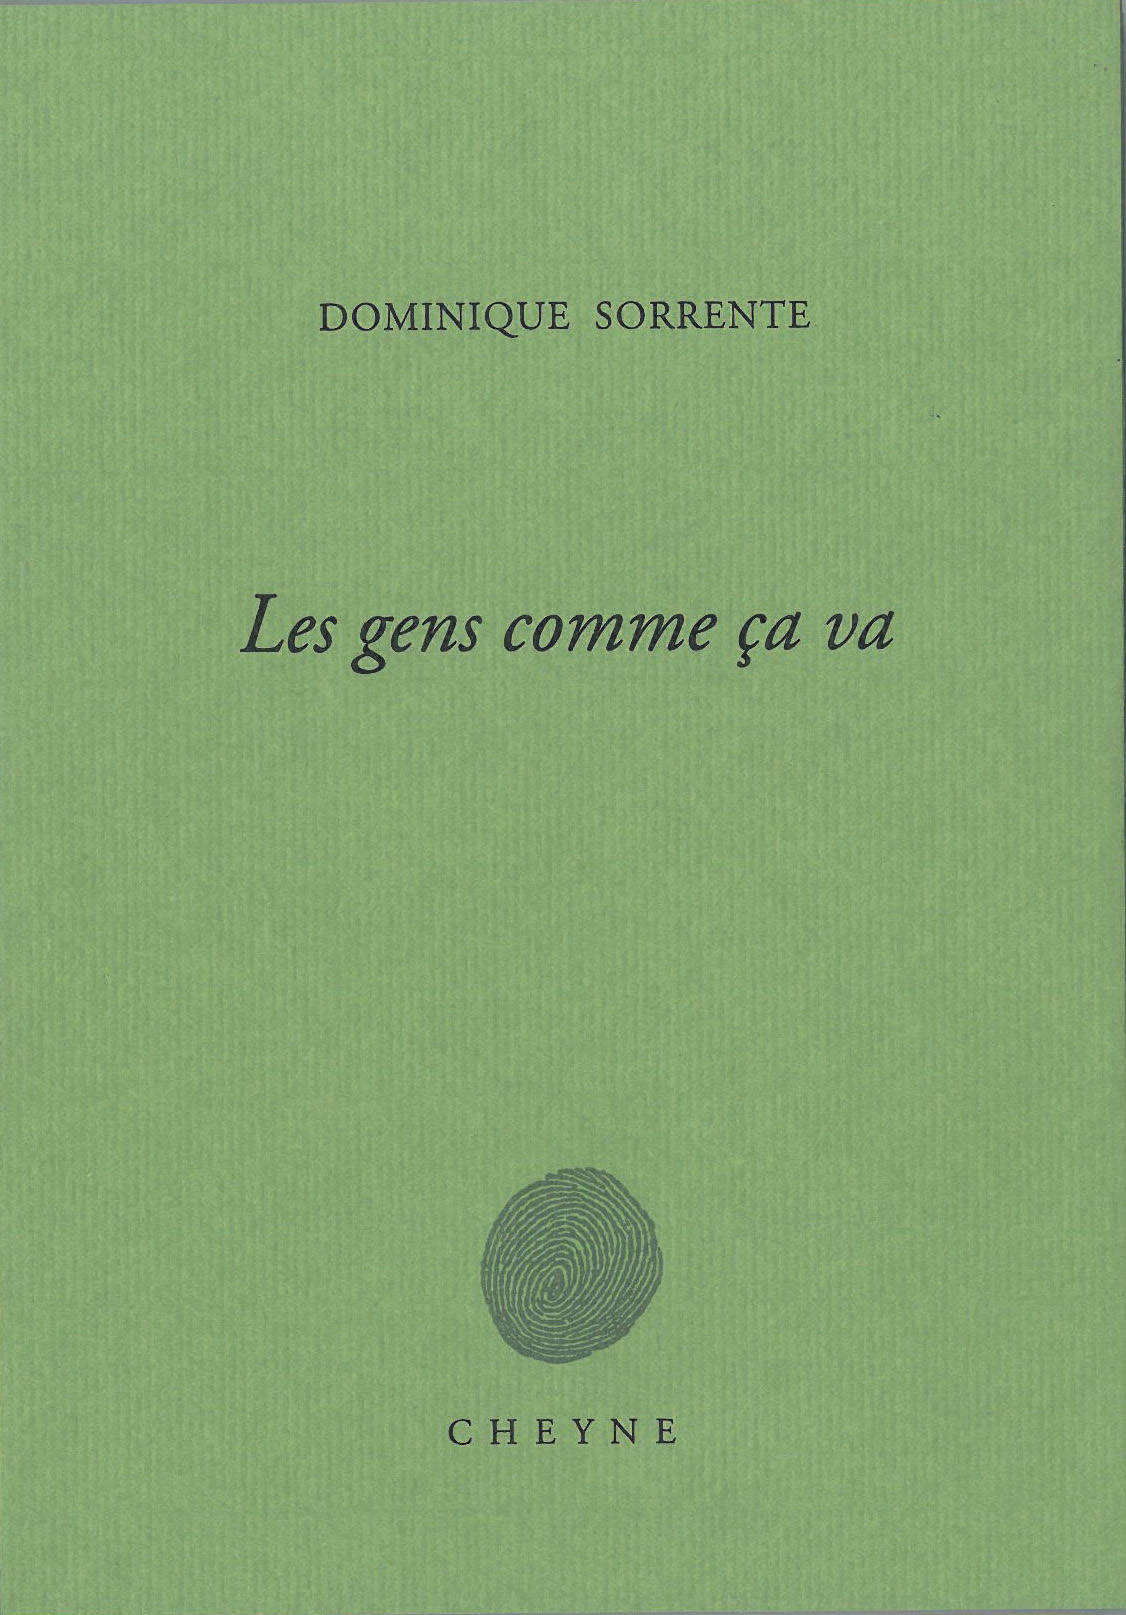 Dominique Sorrente, Les gens comme ça va, Cheyne, 2017, 87 pages, 17 €.